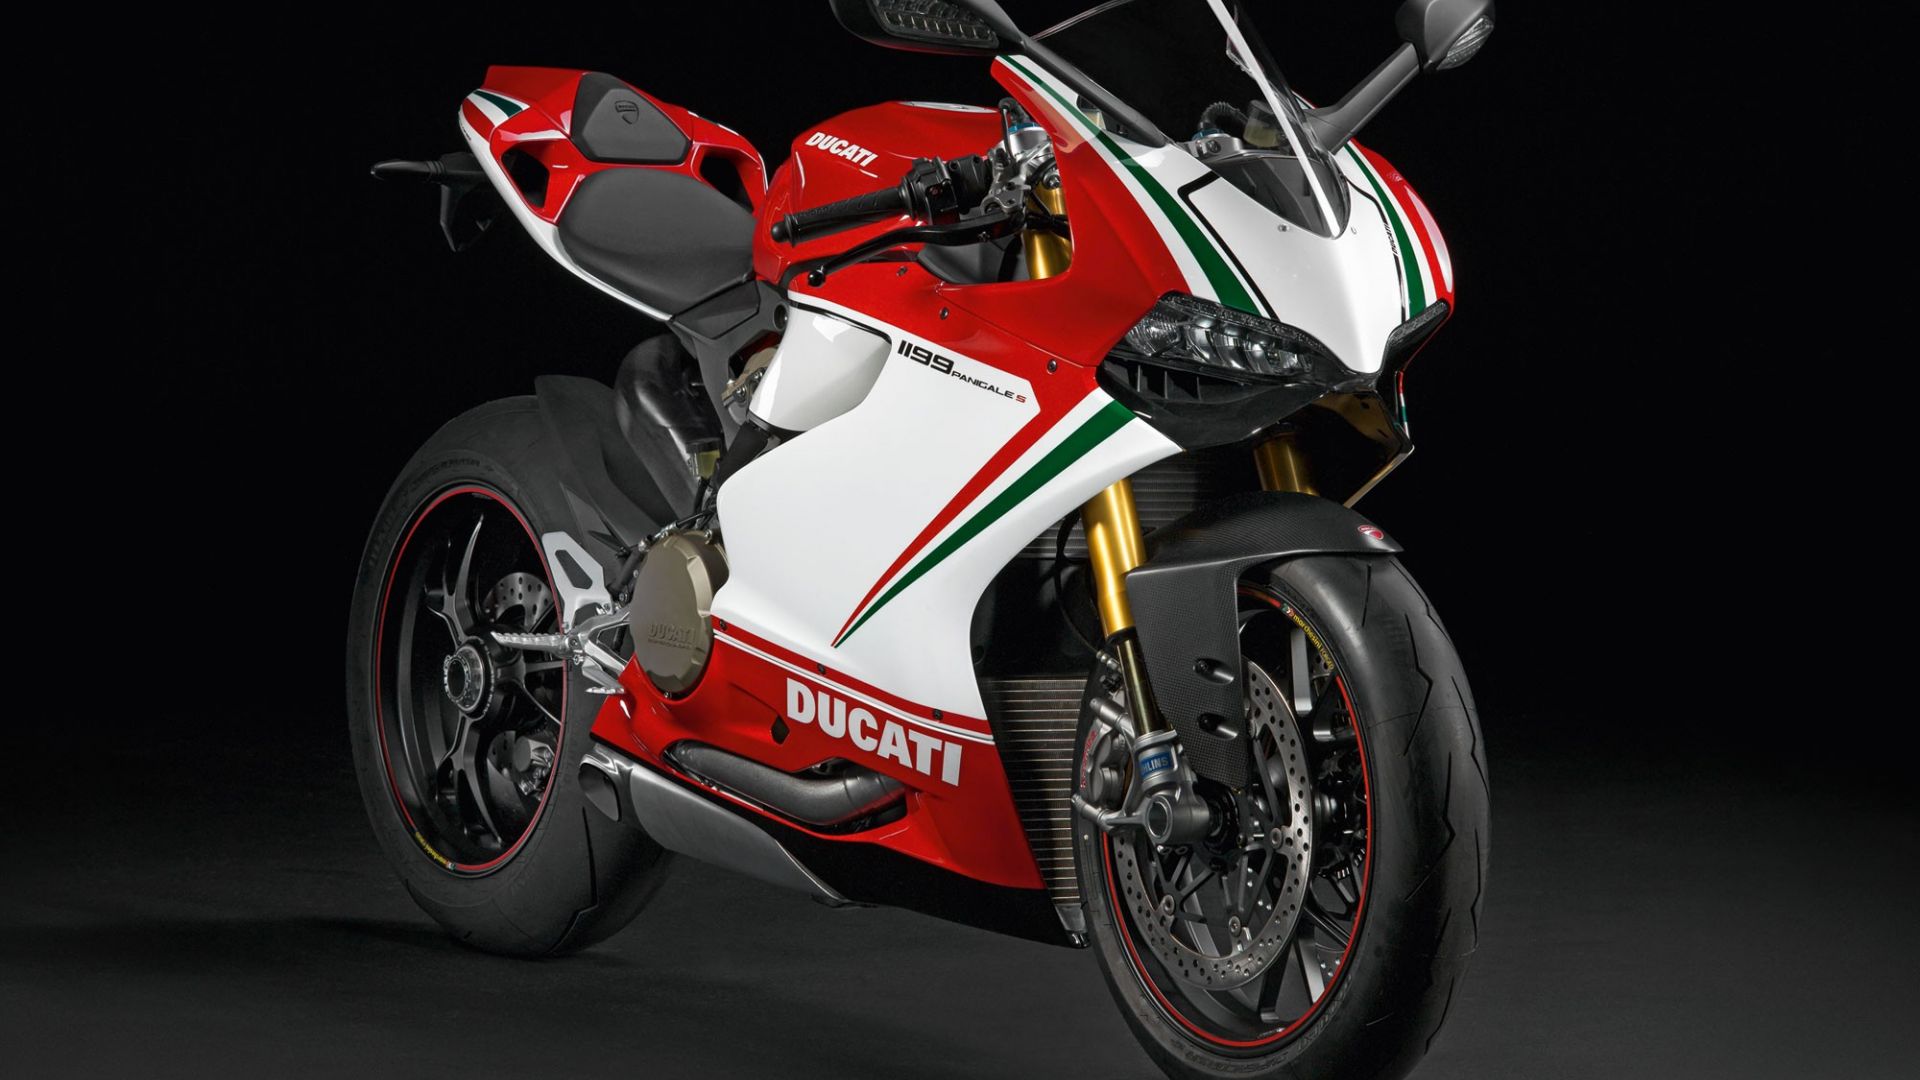 Wallpaper Ducati 1199 race bike